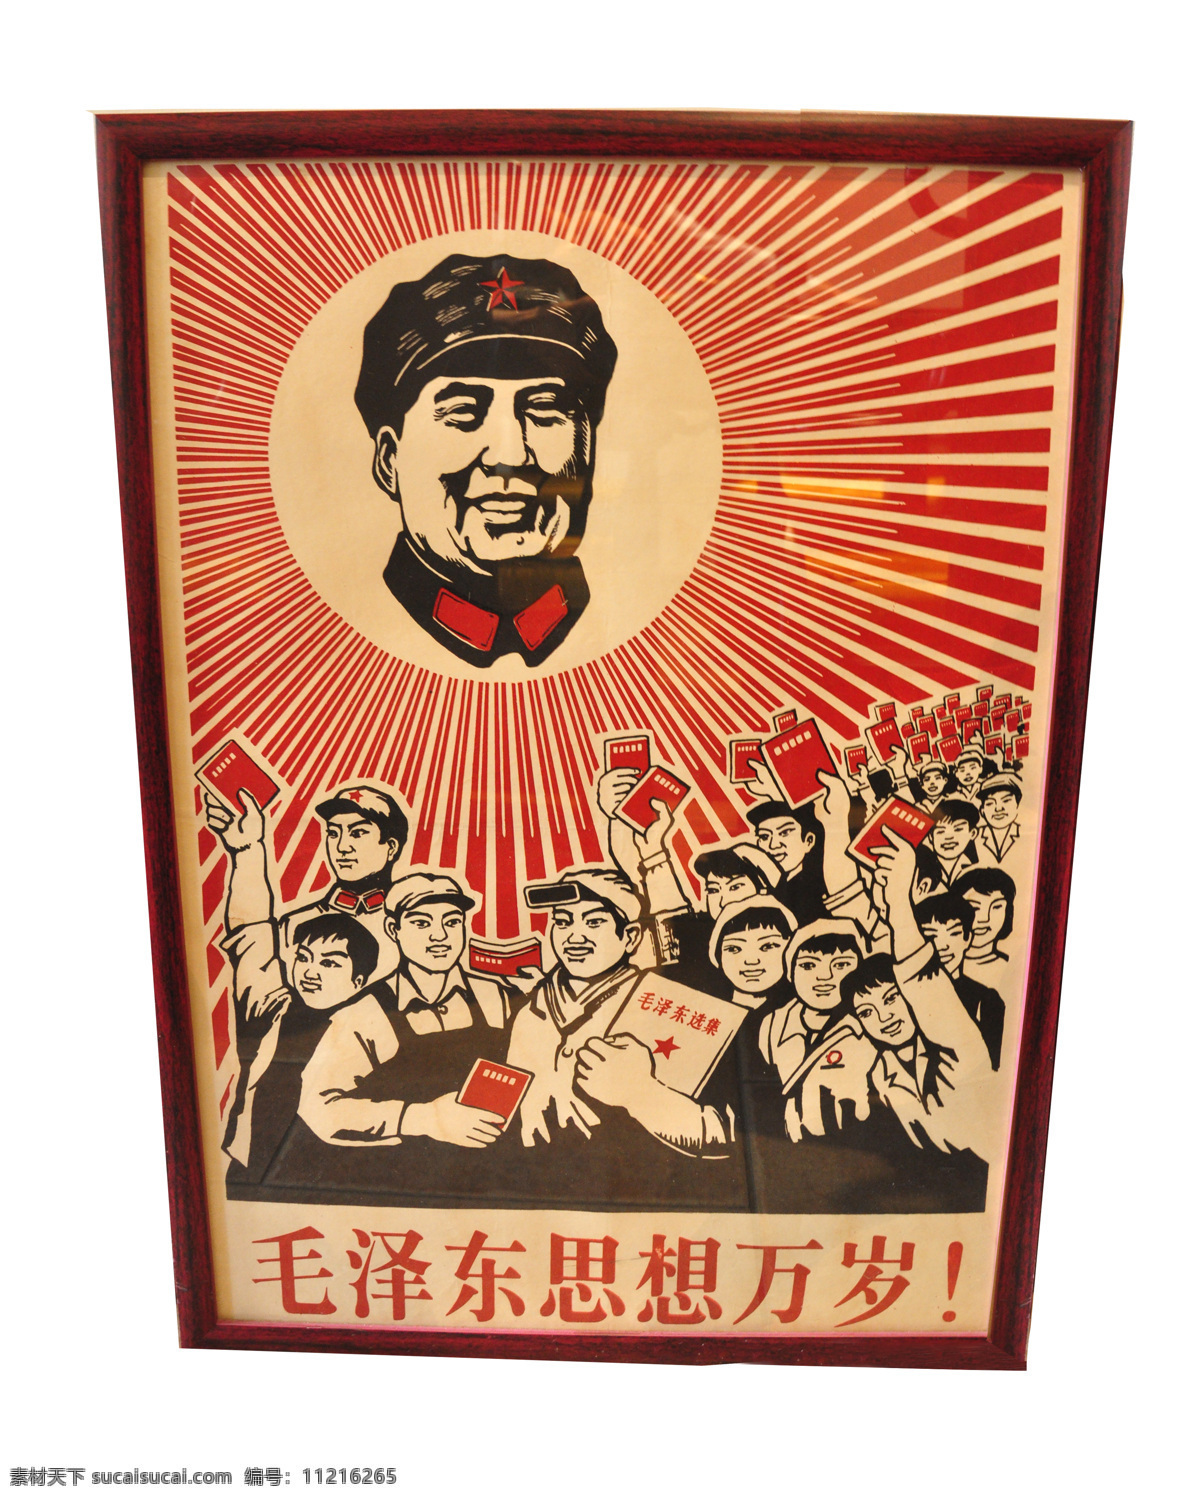 毛泽东思想 版画 毛泽东 思想 共产党 历史 艺术图片 文化艺术 传统文化